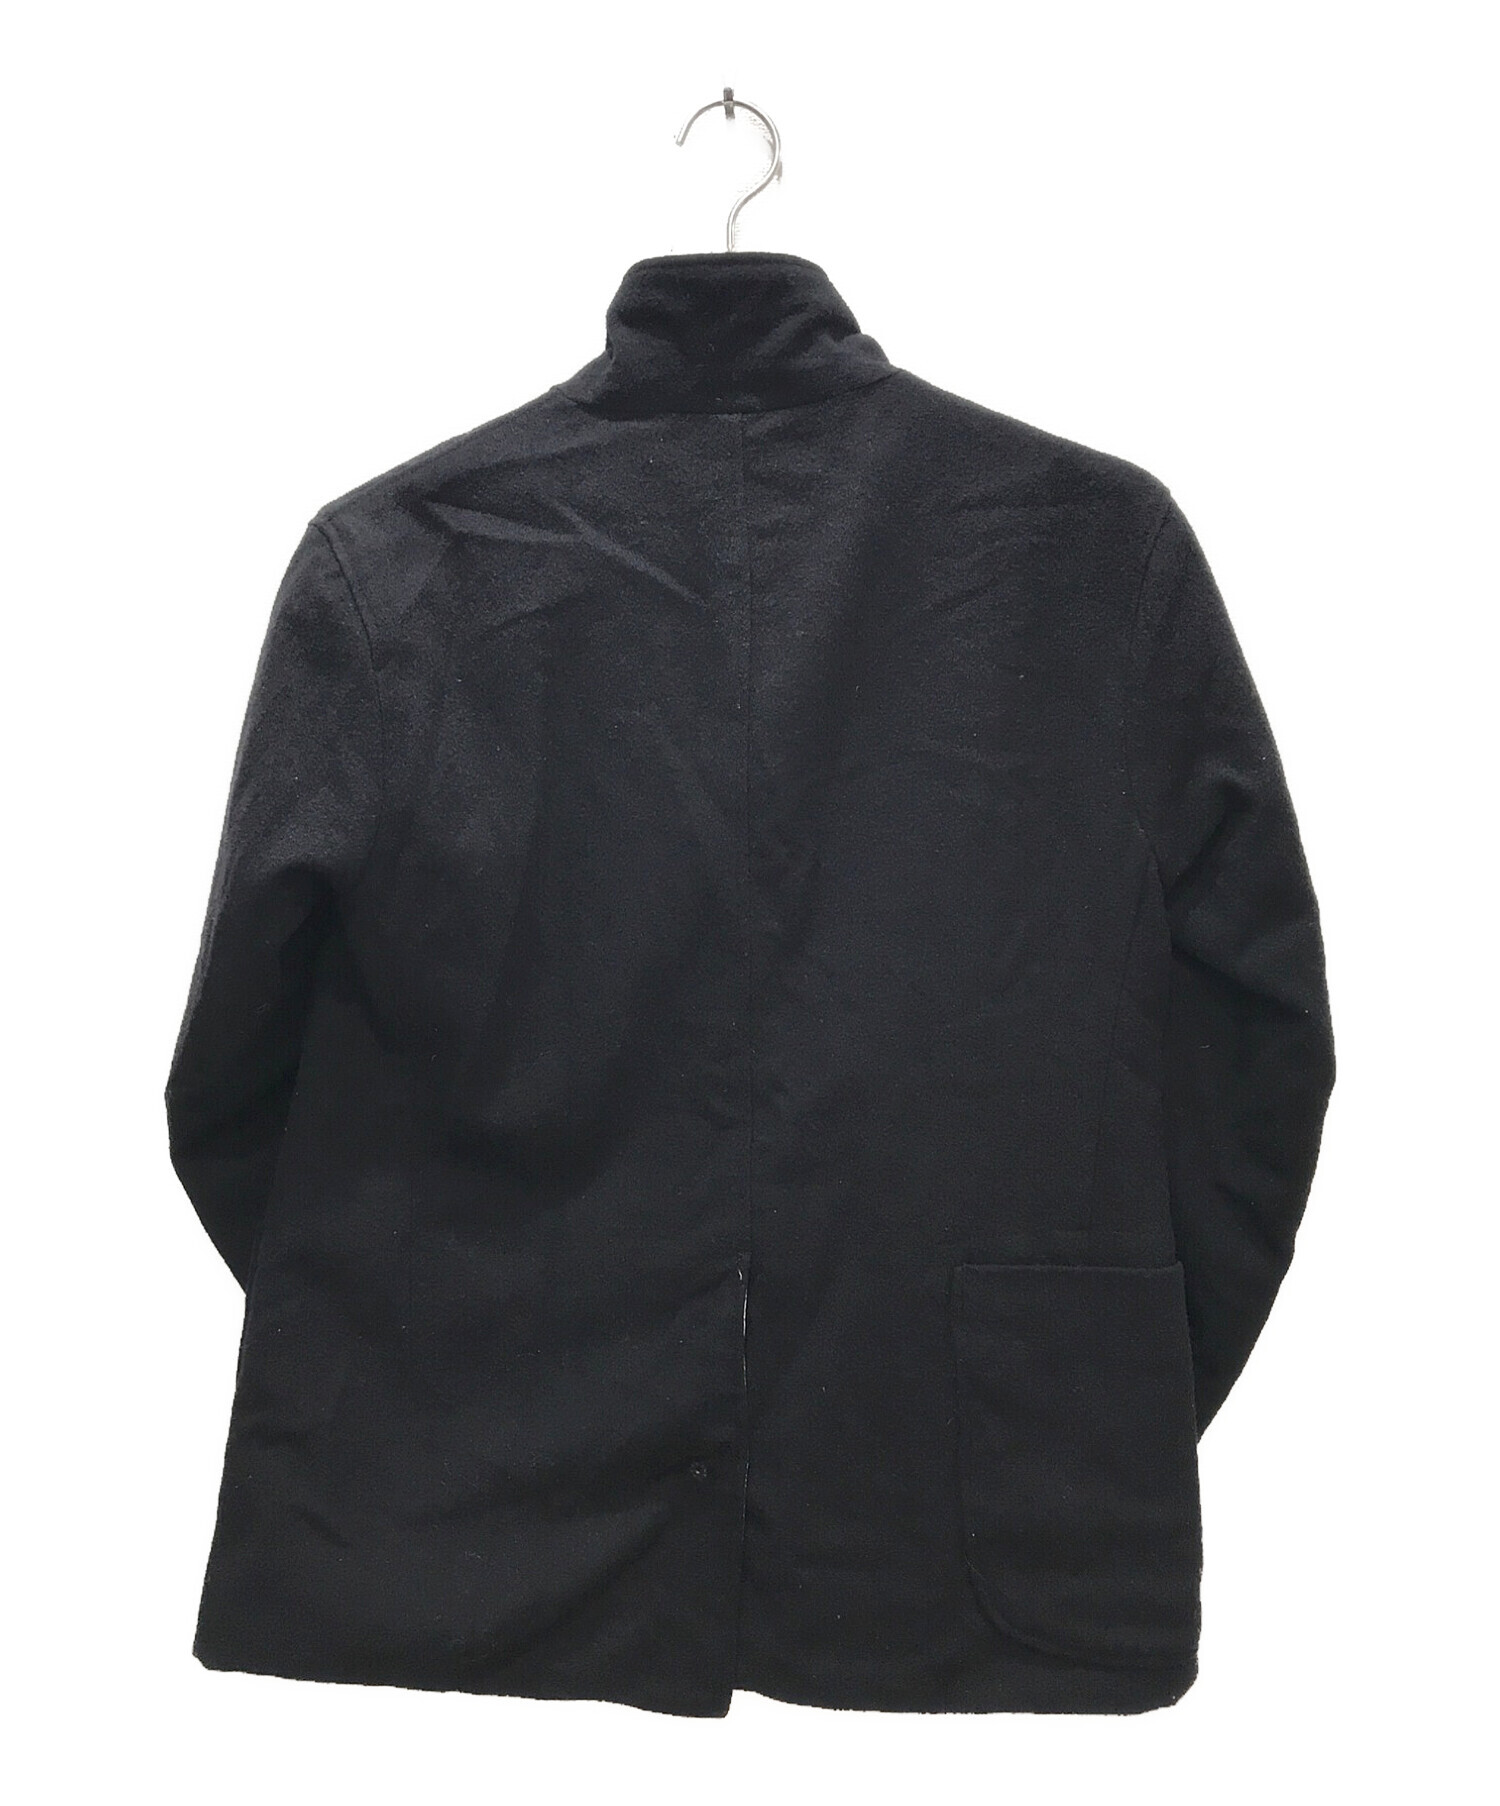 Engineered Garments (エンジニアドガーメンツ) ボタニカル柄リバーシブルテーラードジャケット ブラック サイズ:XS